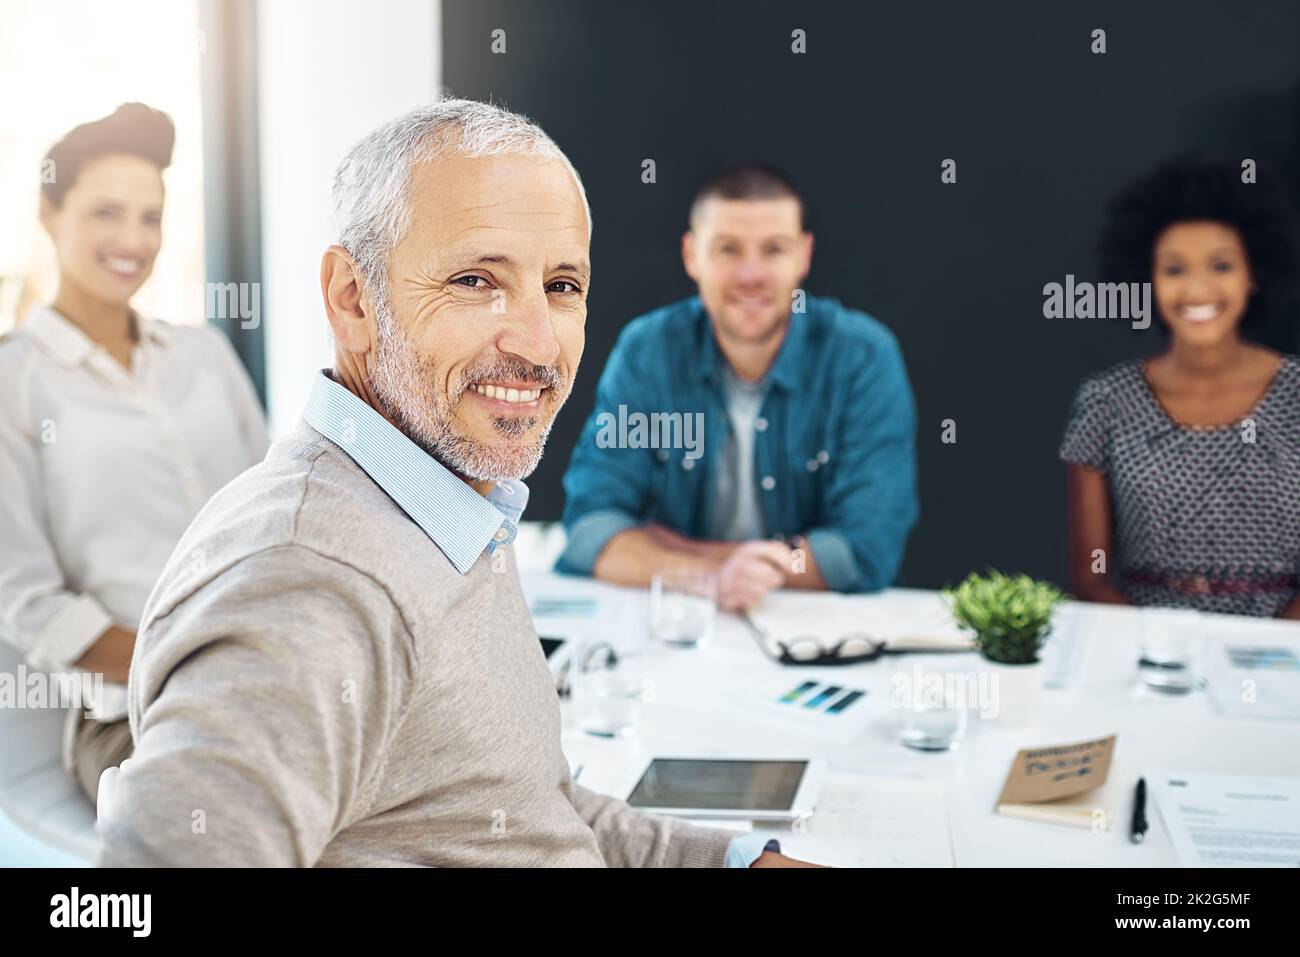 Notre objectif est de ne réaliser que le meilleur. Portrait d'un homme d'affaires mature assis dans une réunion avec ses collègues en arrière-plan. Banque D'Images